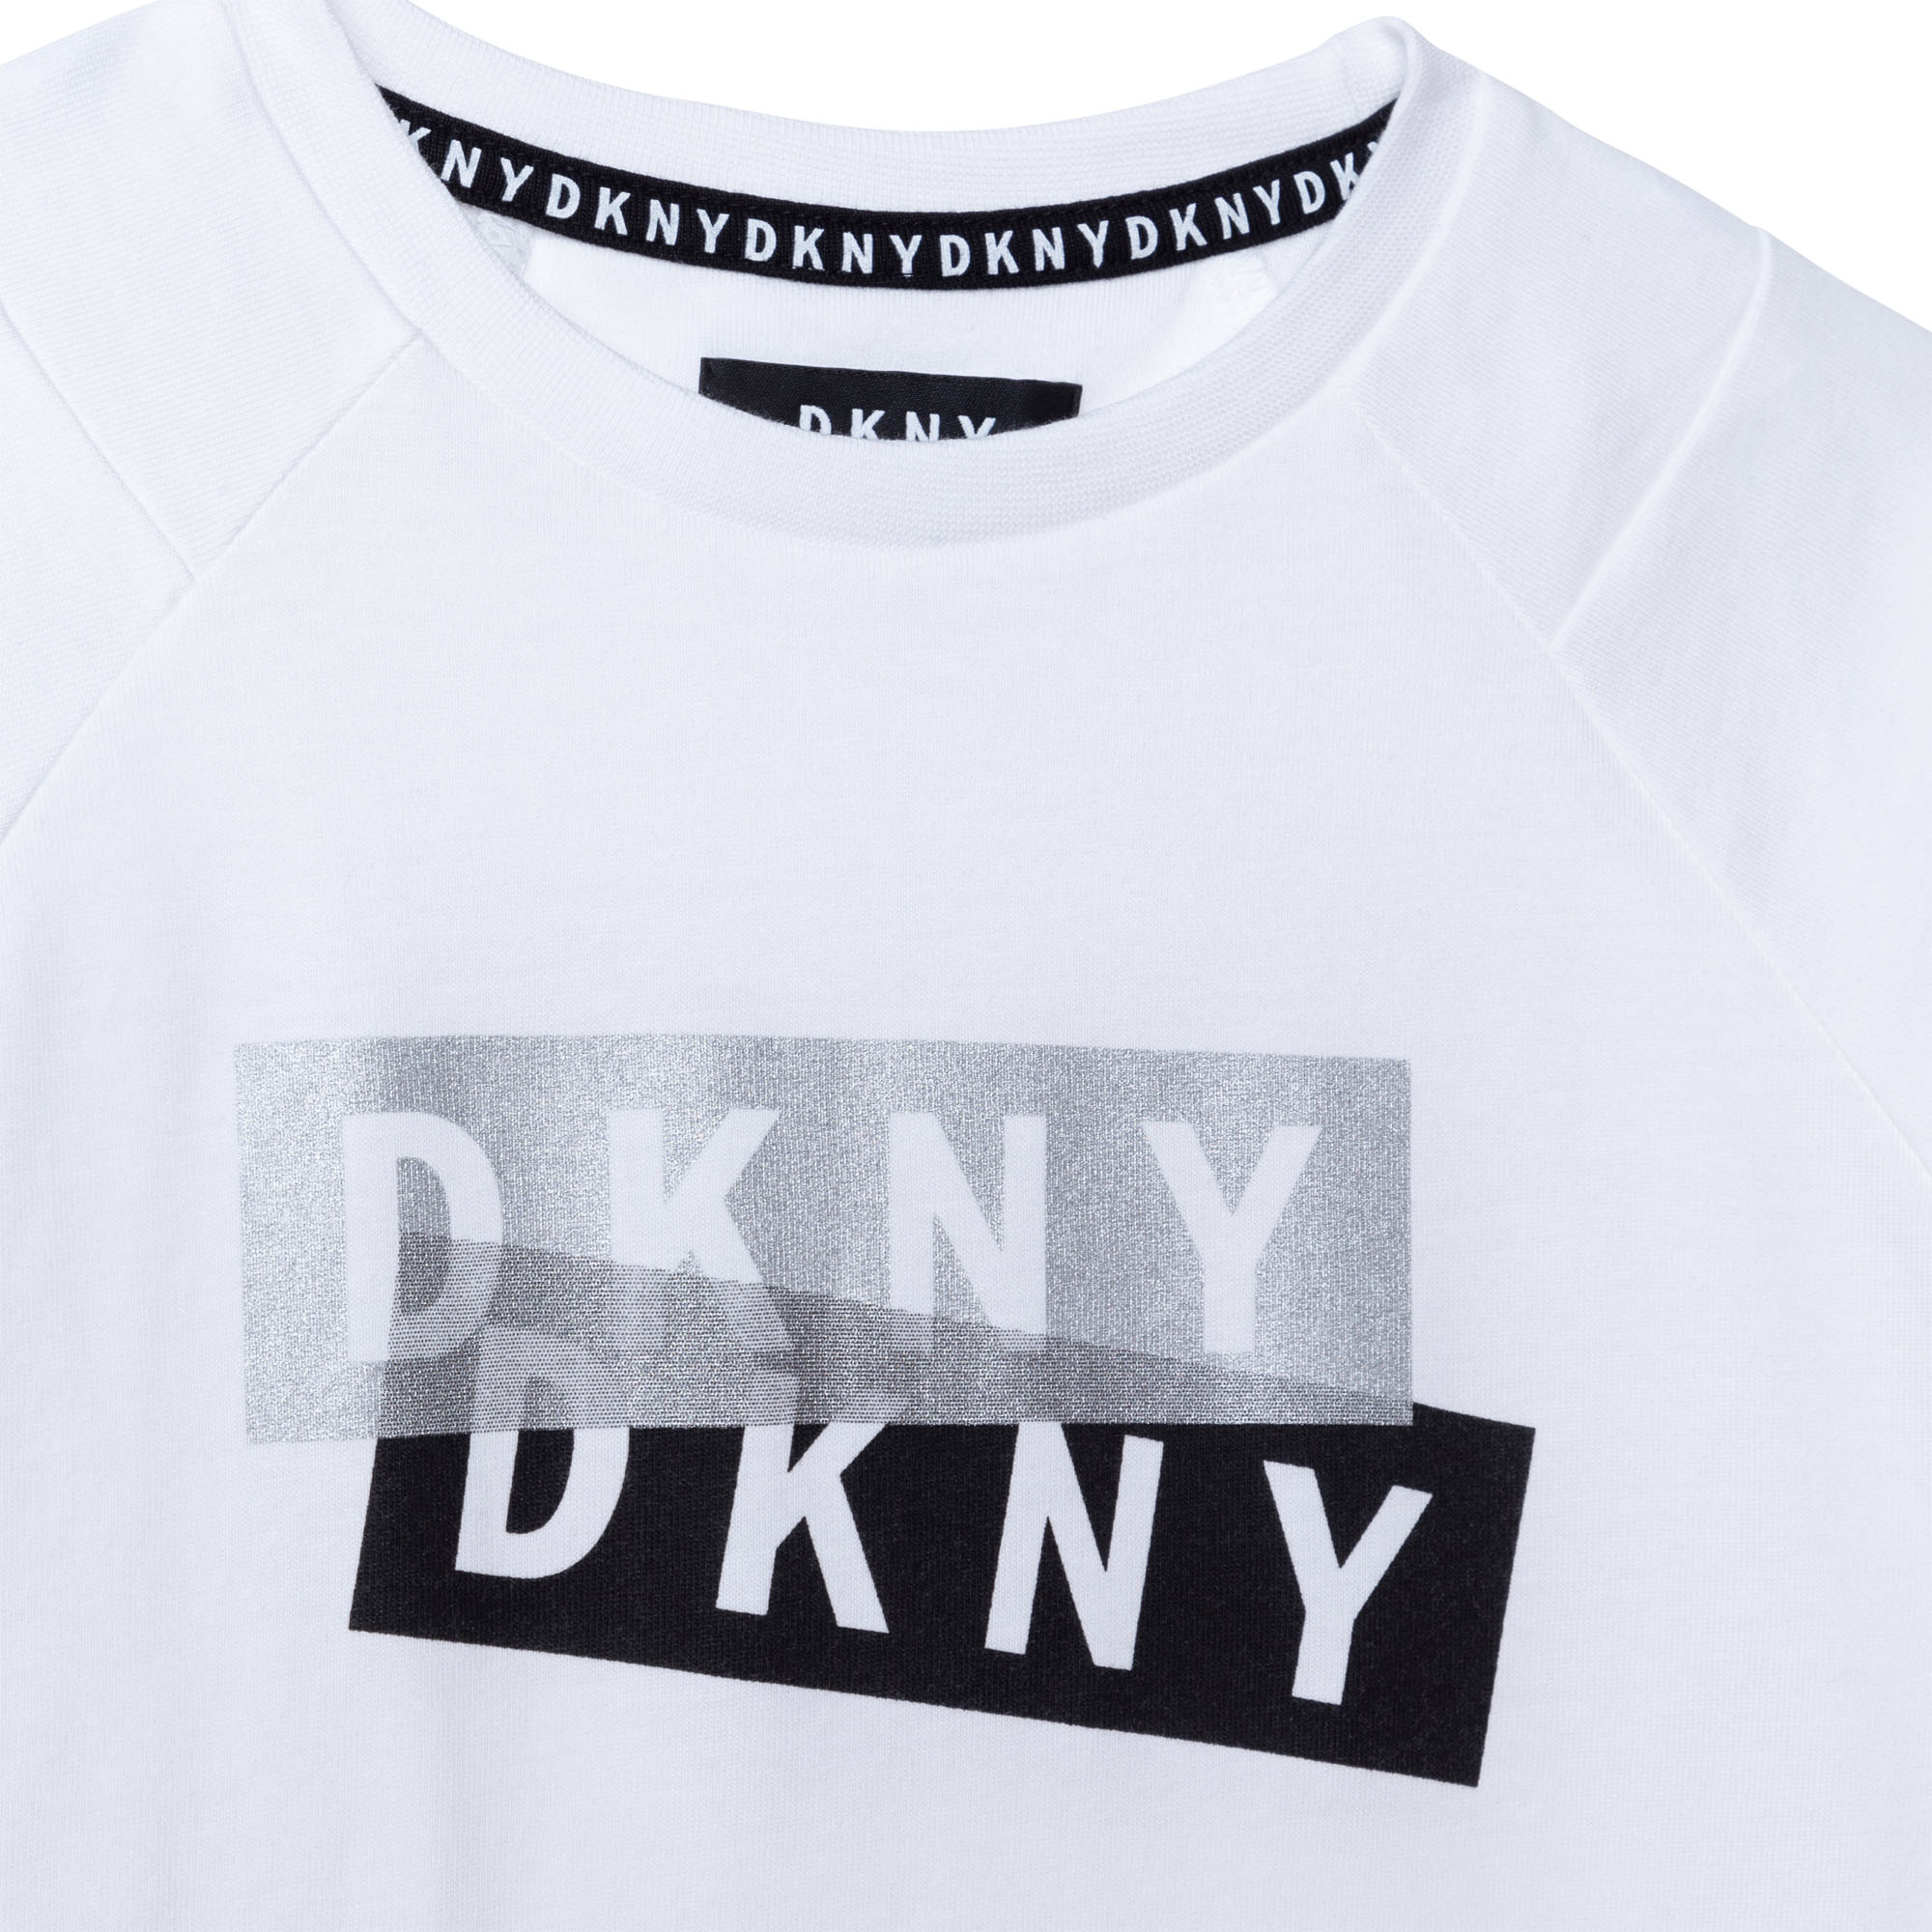 T-SHIRT DKNY pour GARCON